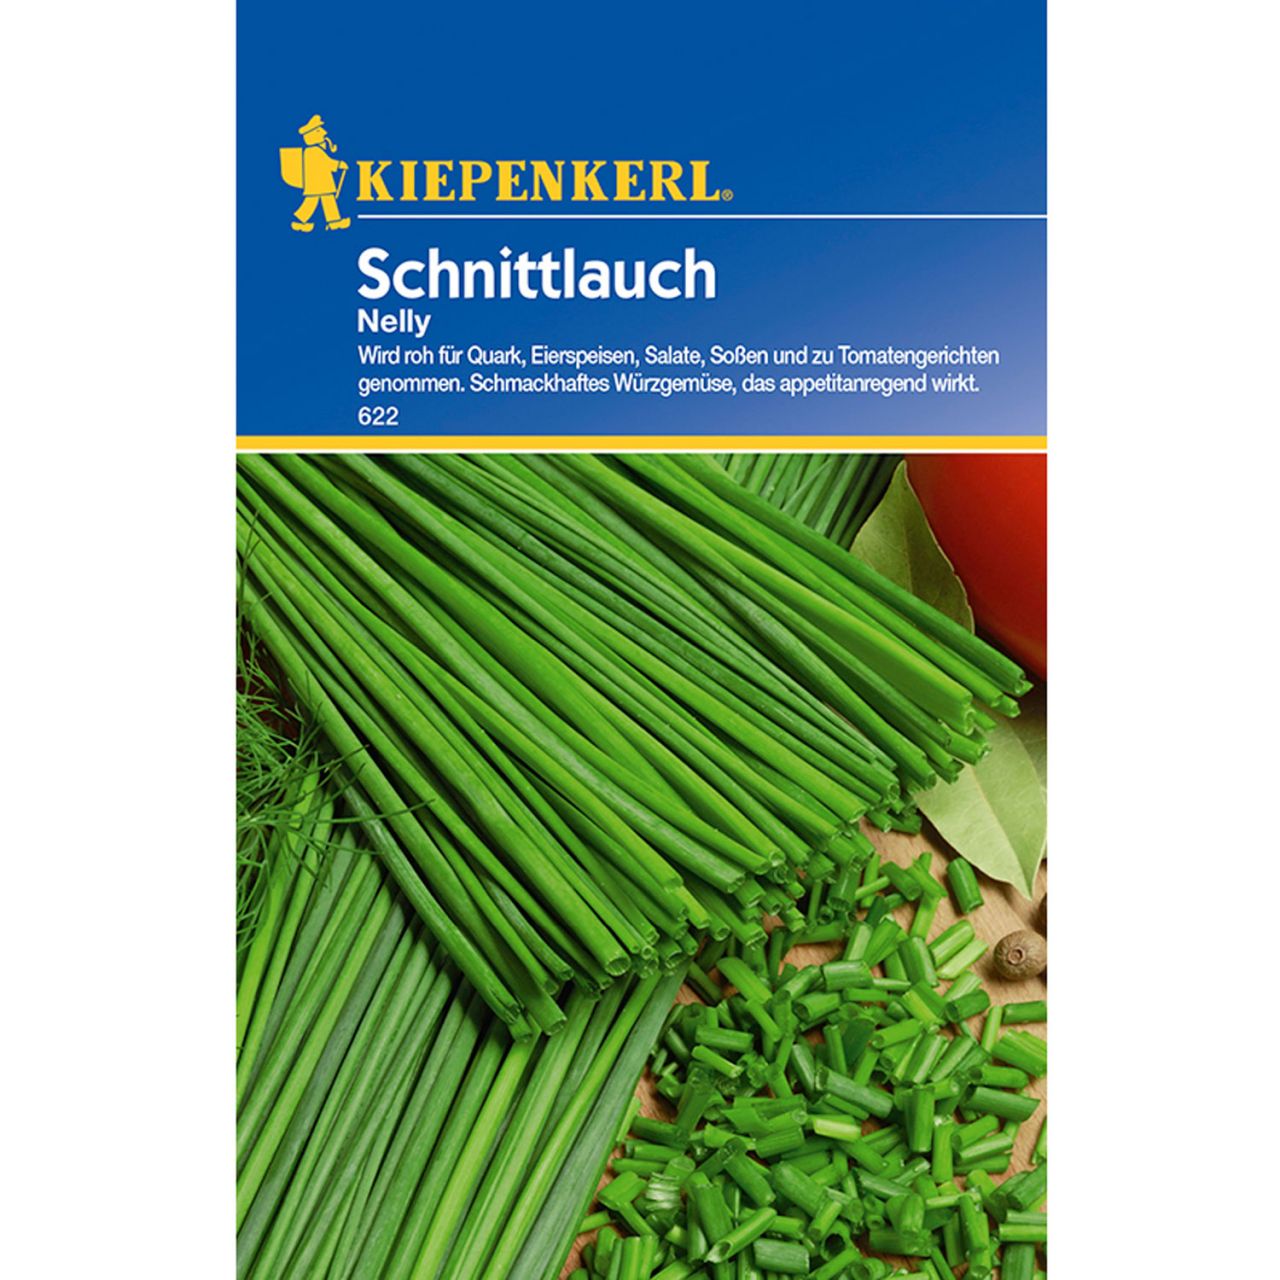  Schnittlauch 'Nelly' - Allium schoenoprasum